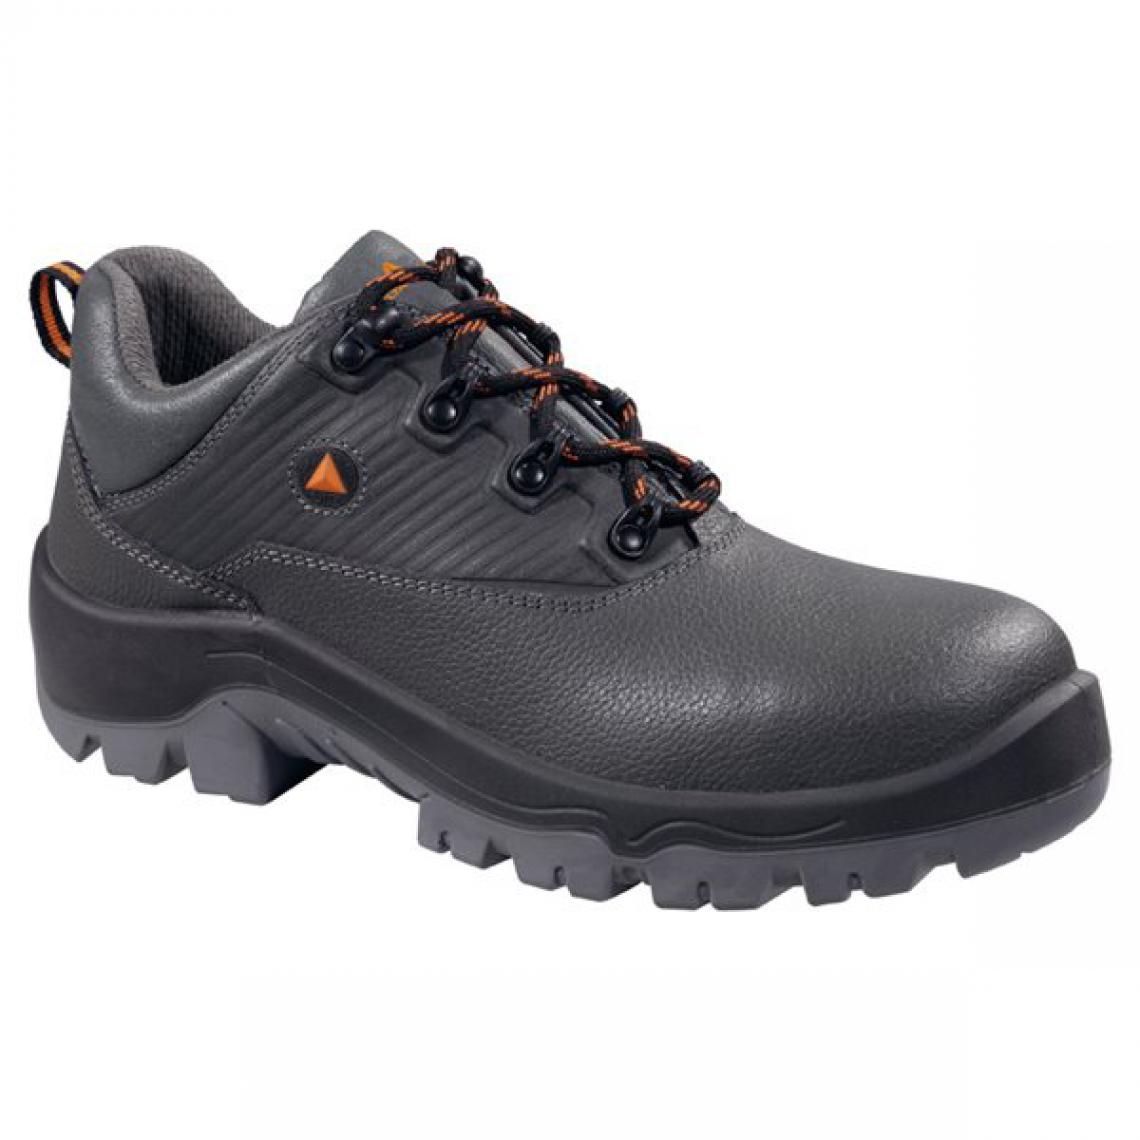 Panoply - Chaussures de sécurité et travail pour homme Paire basse en cuir gris Norme EN345 SRC S3 Taille - 39 - Equipement de Protection Individuelle